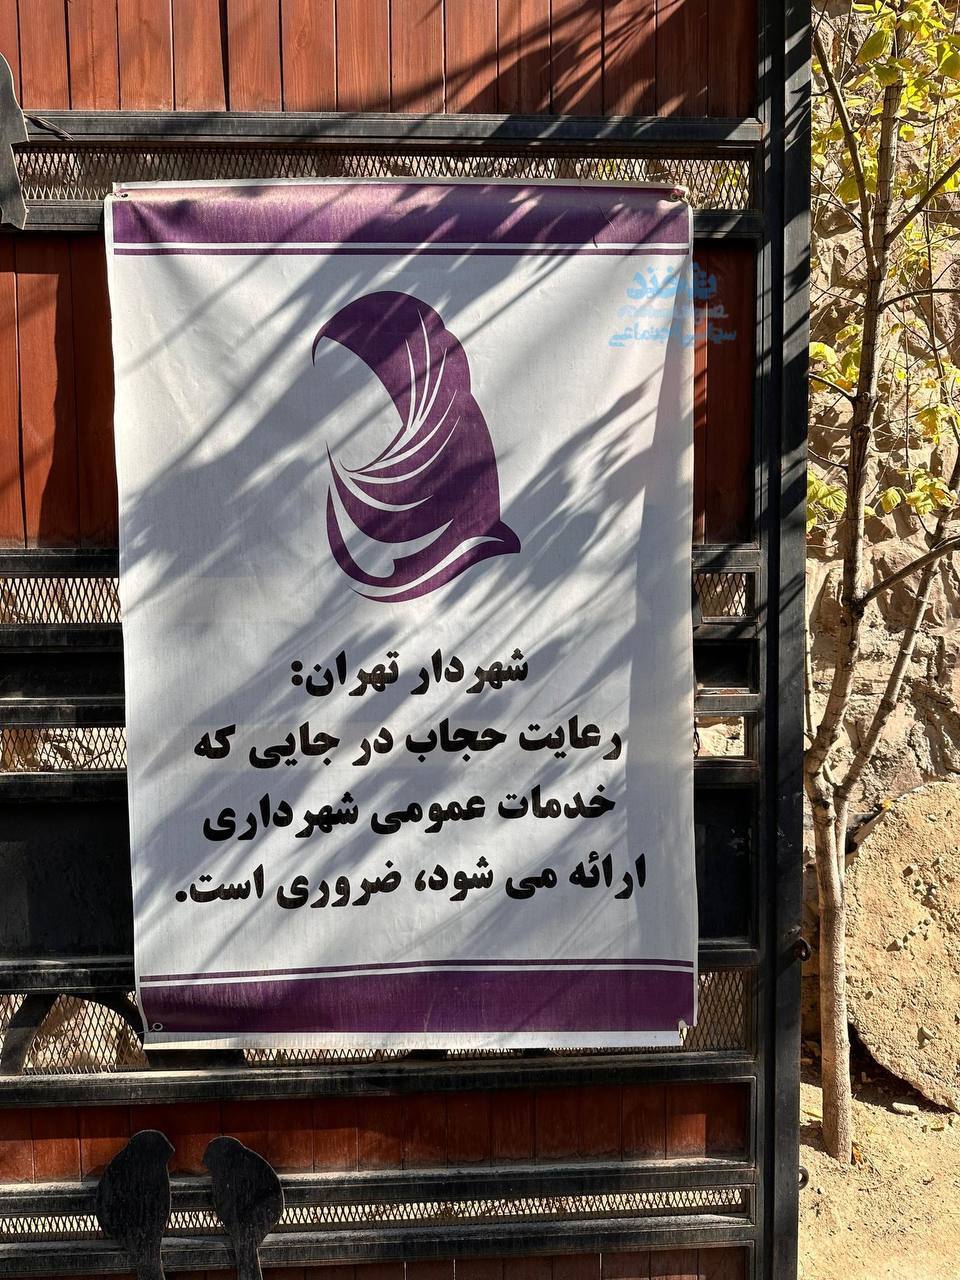 عکس پربازدید از یک بنر شهرداری درباره حجاب